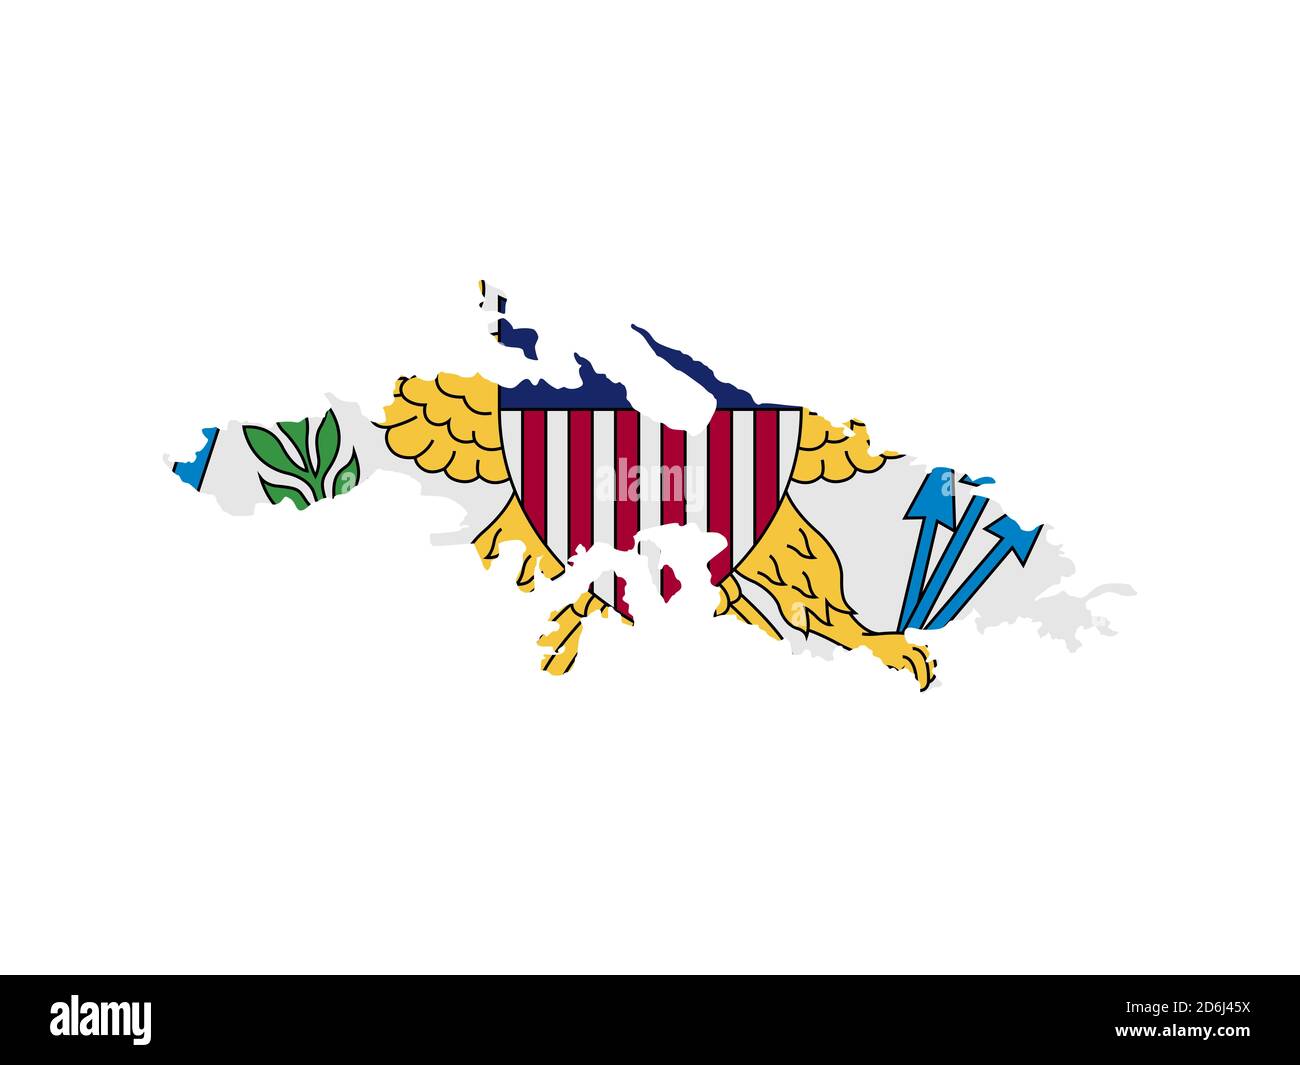 Flagge in Form des geographischen Landes, amerikanische Jungferninseln, Lateinamerika und Karibik, Karibik, Nord- und Südamerika Stockfoto